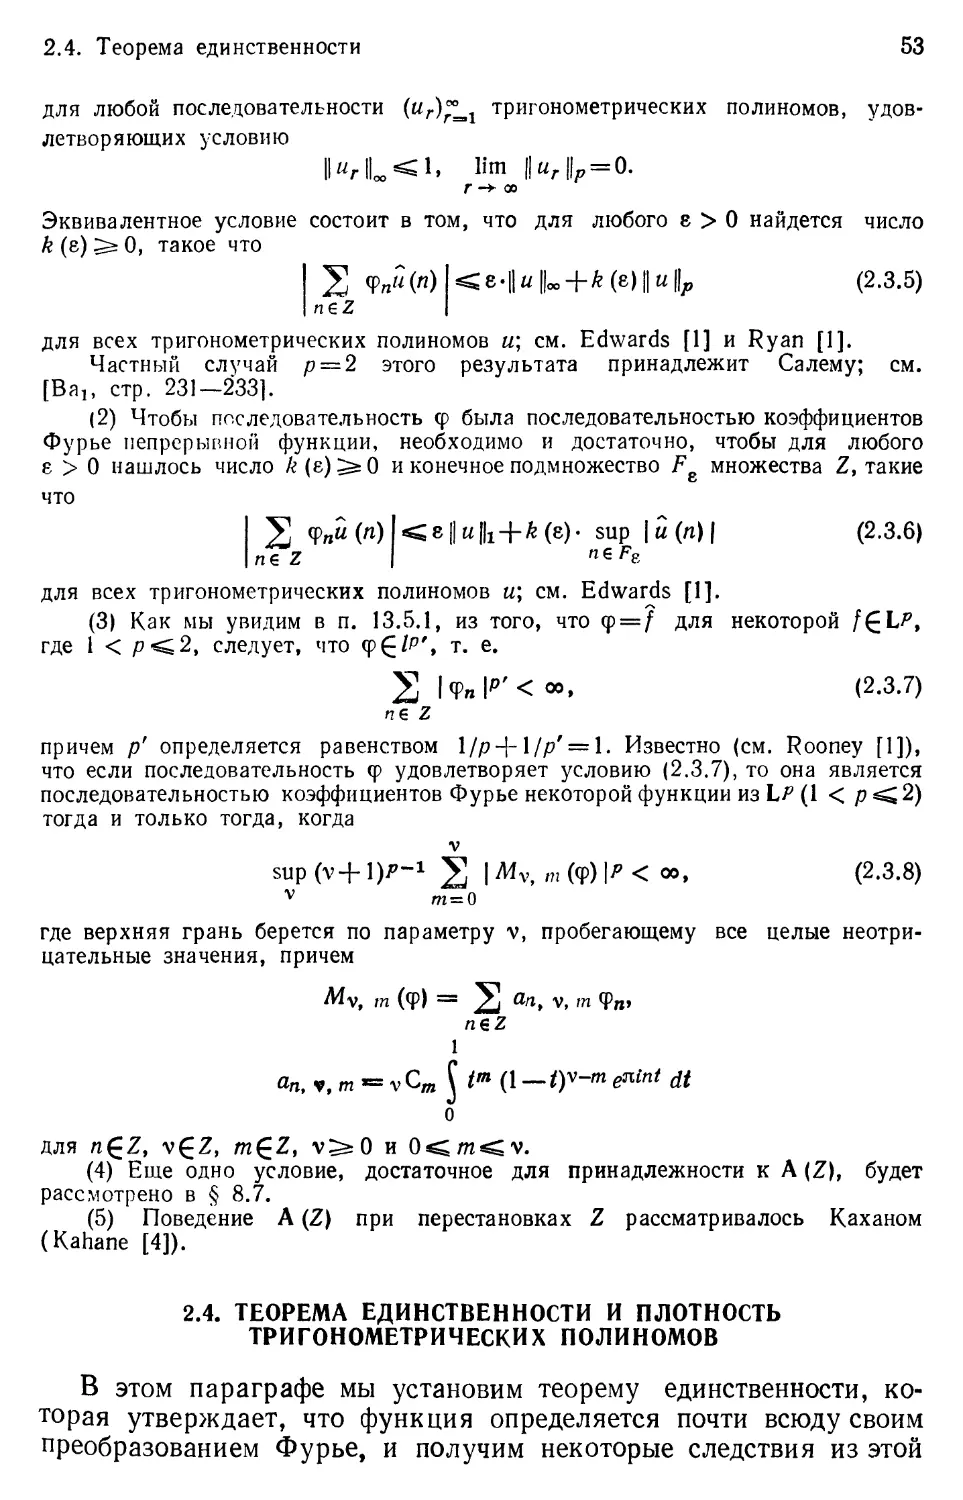 2.4. Теорема единственности и плотность множества тригонометрических полиномов